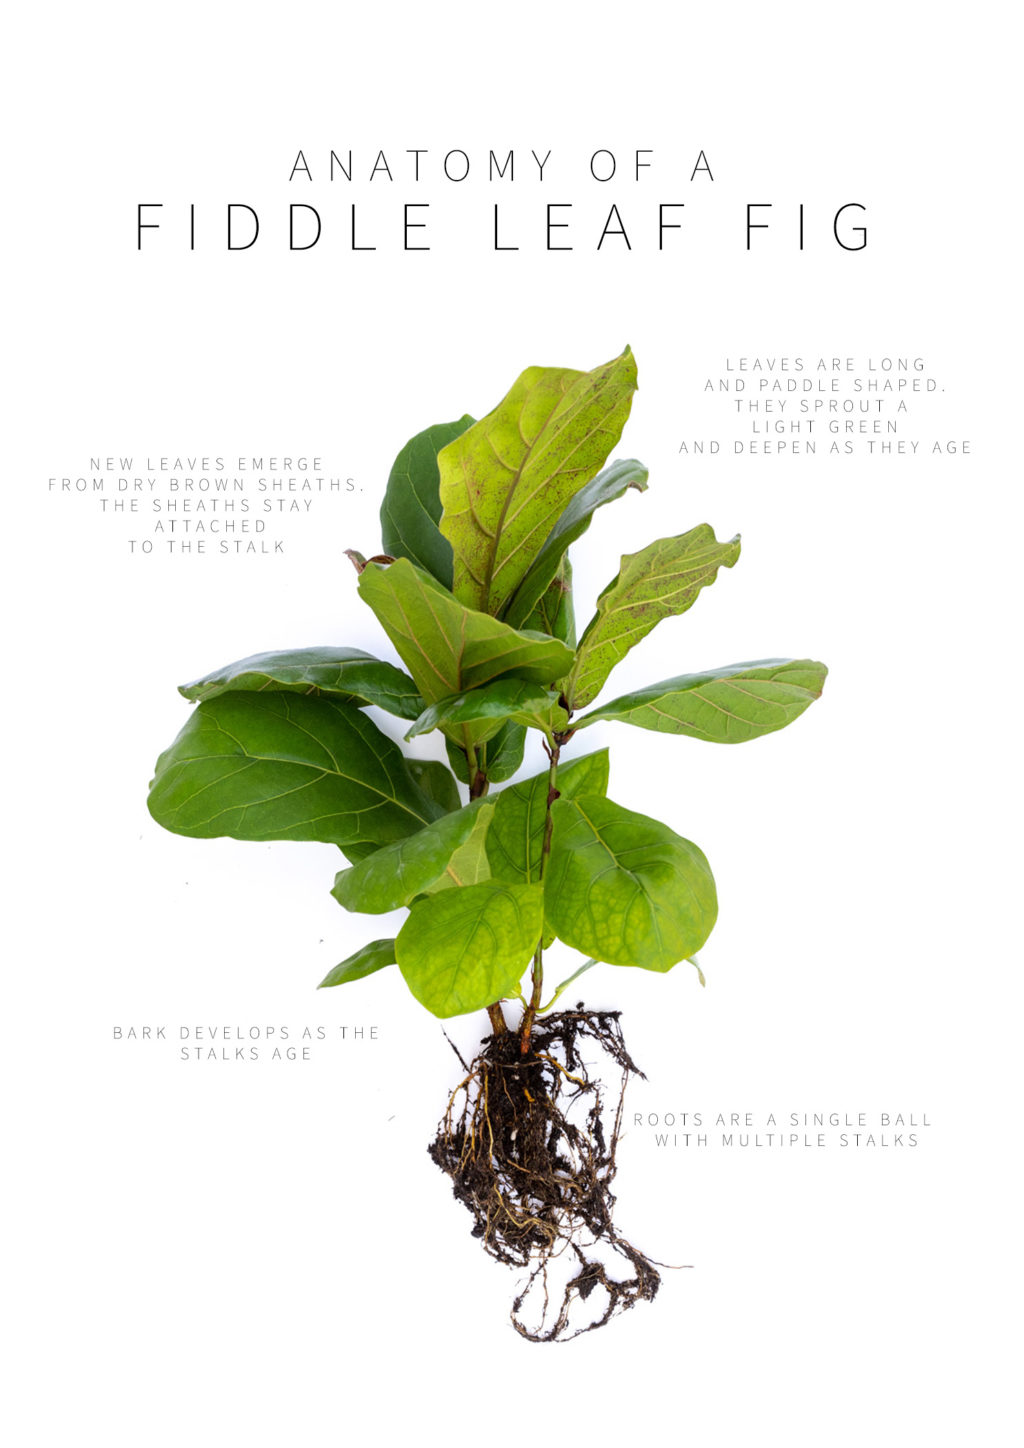 Anatomy of a Fiddle Leaf Fig Plant